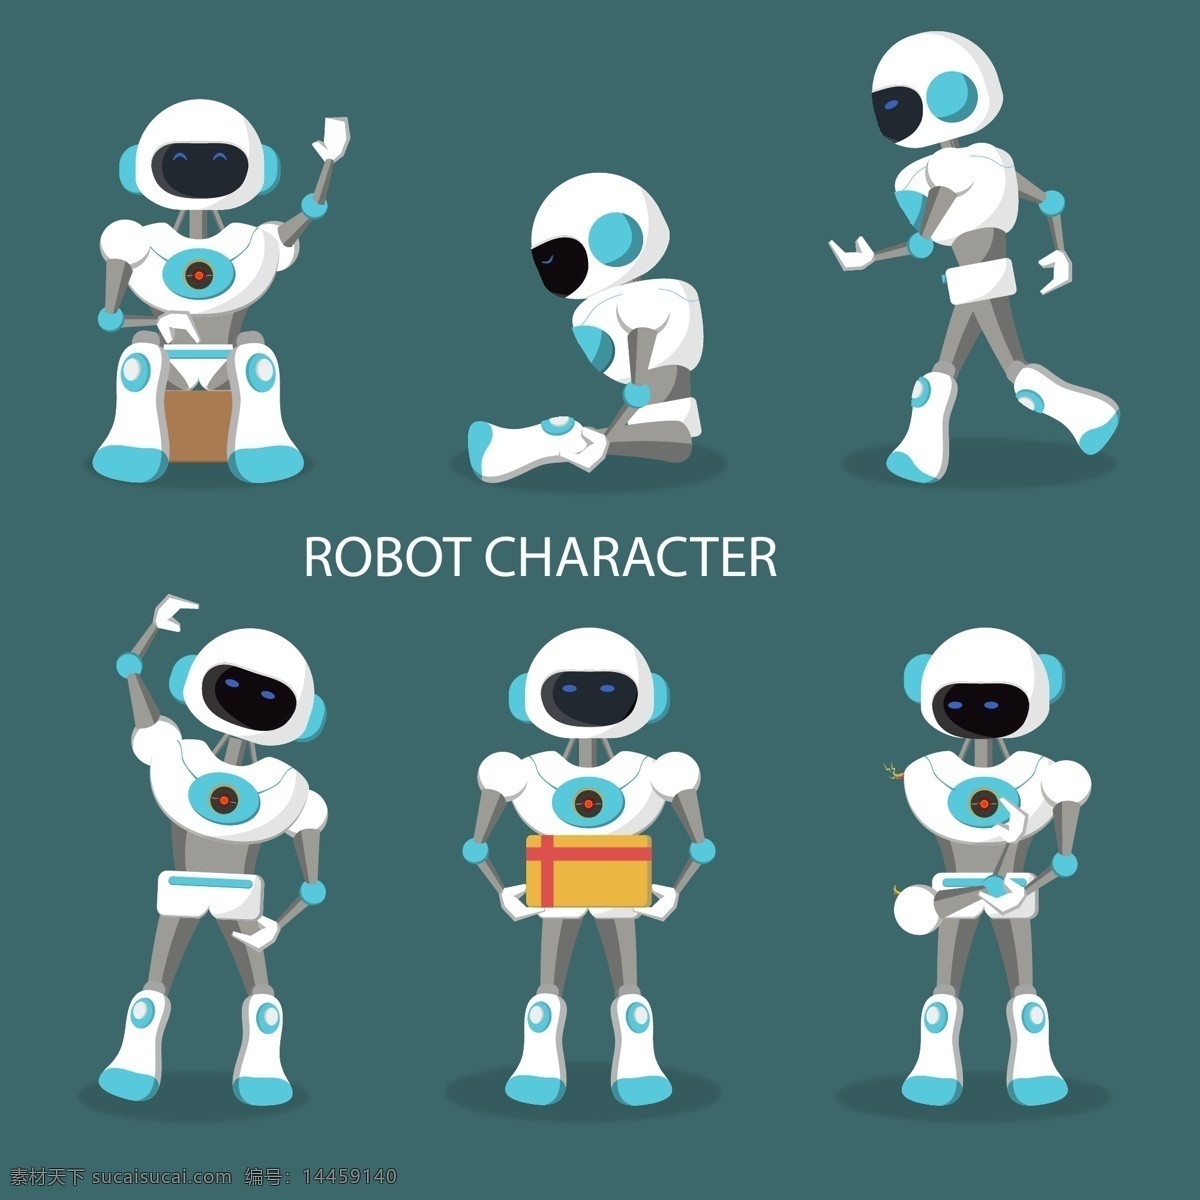 卡通机器人 动漫机器人 矢量机器人 扁平机器人 卡爱机器人 机器人大全 人工智能 卡通动漫 动漫角色 概念设计 科技时代 智能科技 机械机器人 动漫玩偶 动漫设计 动漫机器角色 机械人 robot 小机器人 外星人 科技机器人 现代机器人 抽象机器人 创意机器人 机器人形象 智能机器人 分享素材 现代科技 工业生产